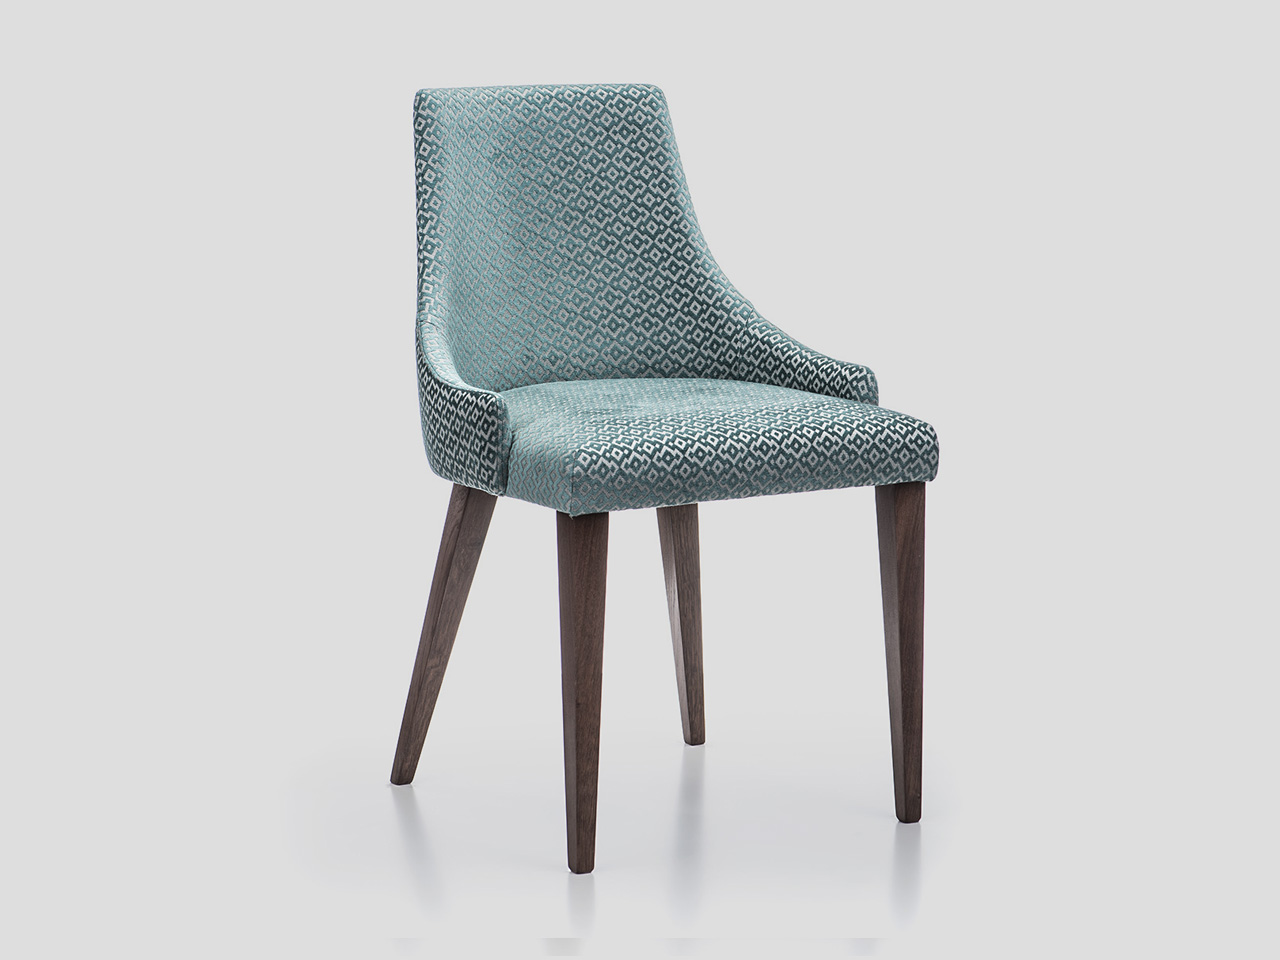 Moderna tapacirana stolica za ugostiteljstvo sa drvenim nogama SOFIA Linea Milanovic